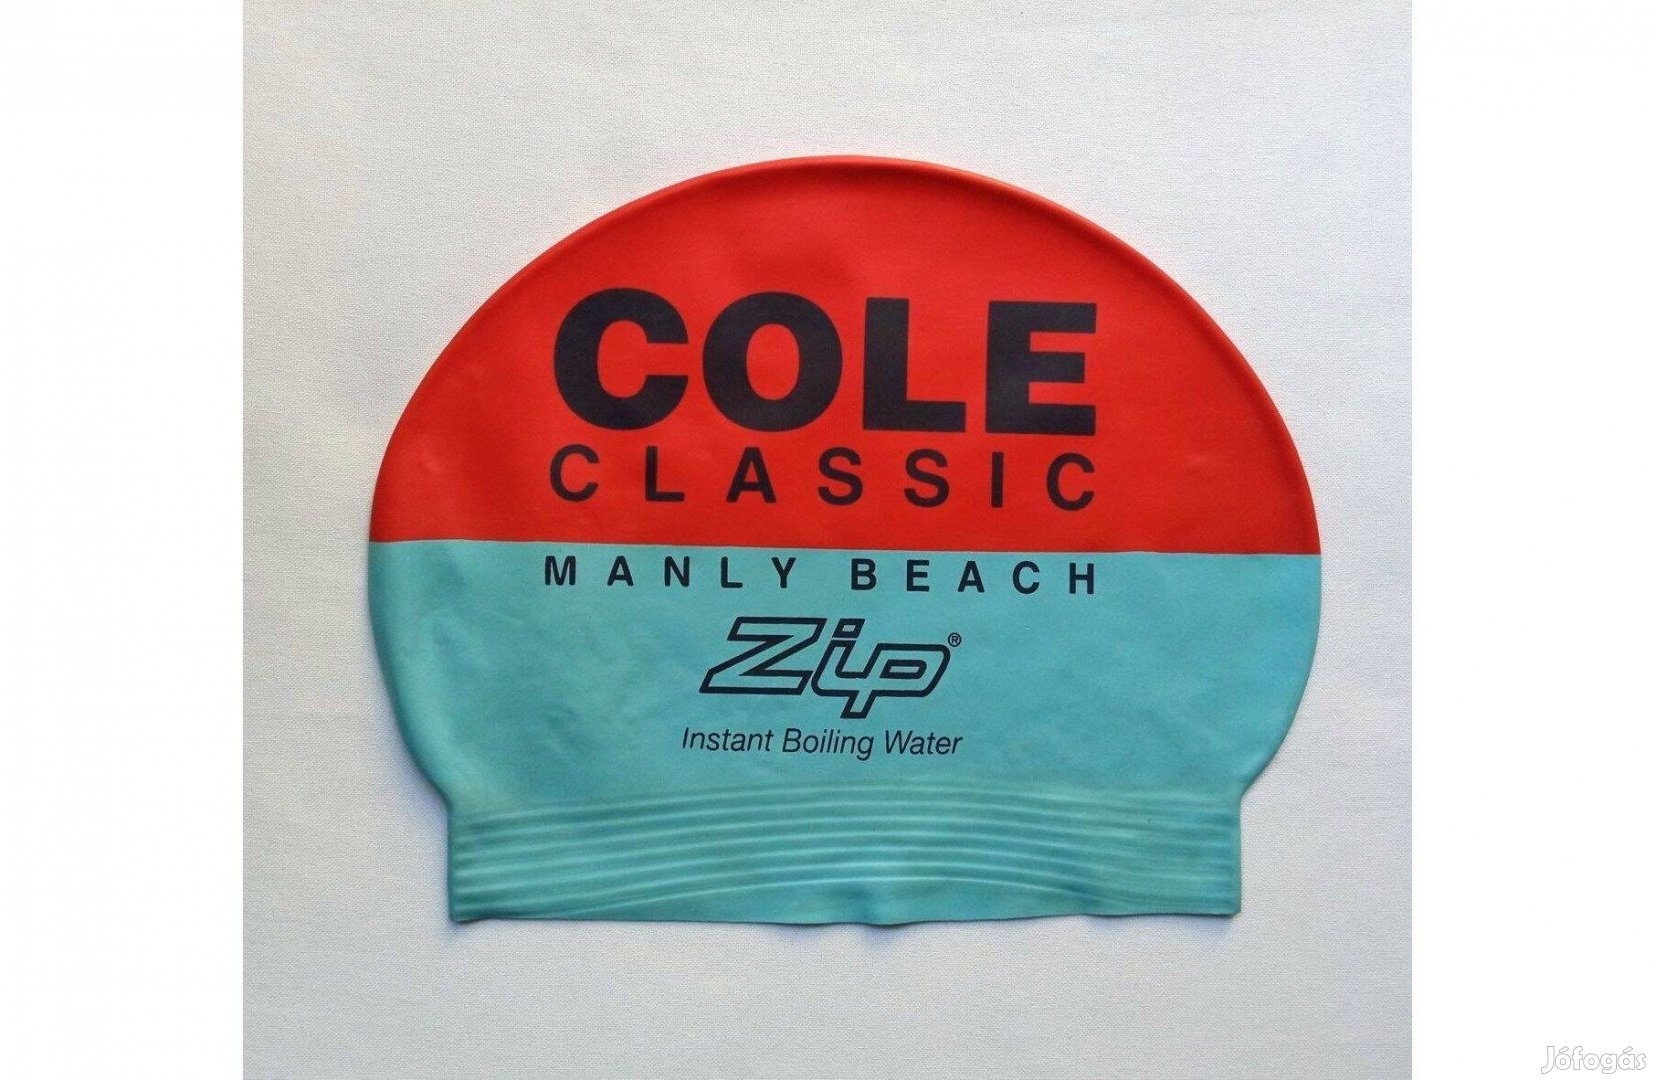 Ezüstös kék-narancs úszósapka Cole Classic Manly Beach Zip a felirat